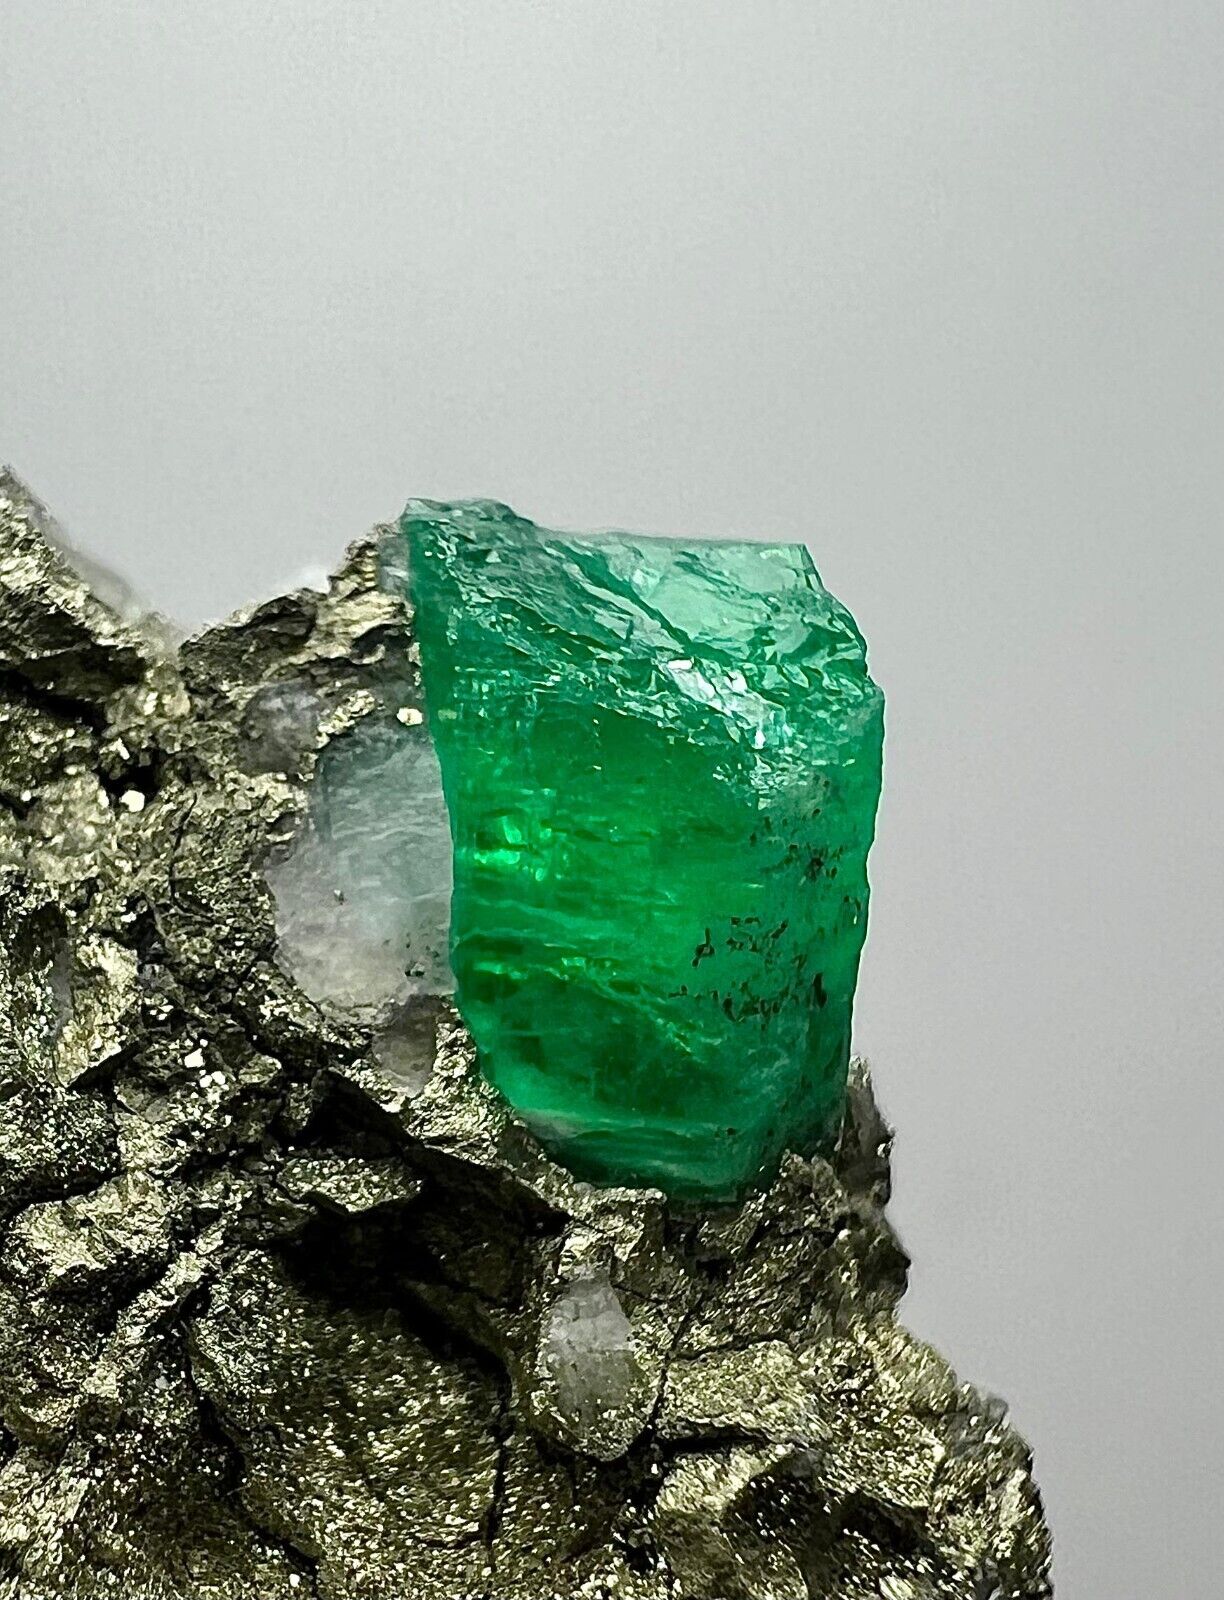 Top quality Panjshir Emerald crystal on Pyrite, 75 carats.